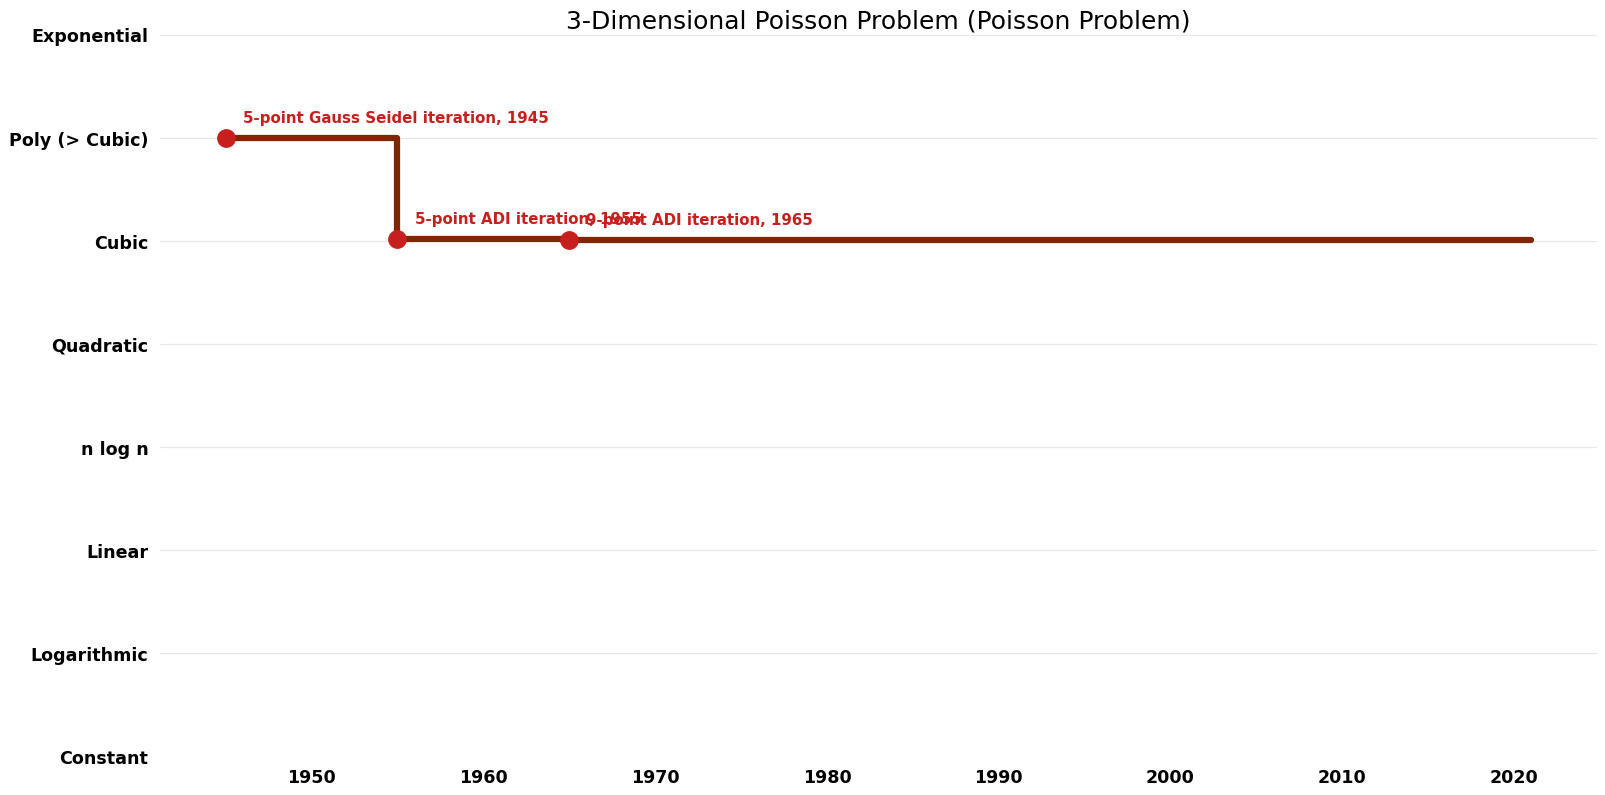 File:Poisson Problem - 3-Dimensional Poisson Problem - Time.png